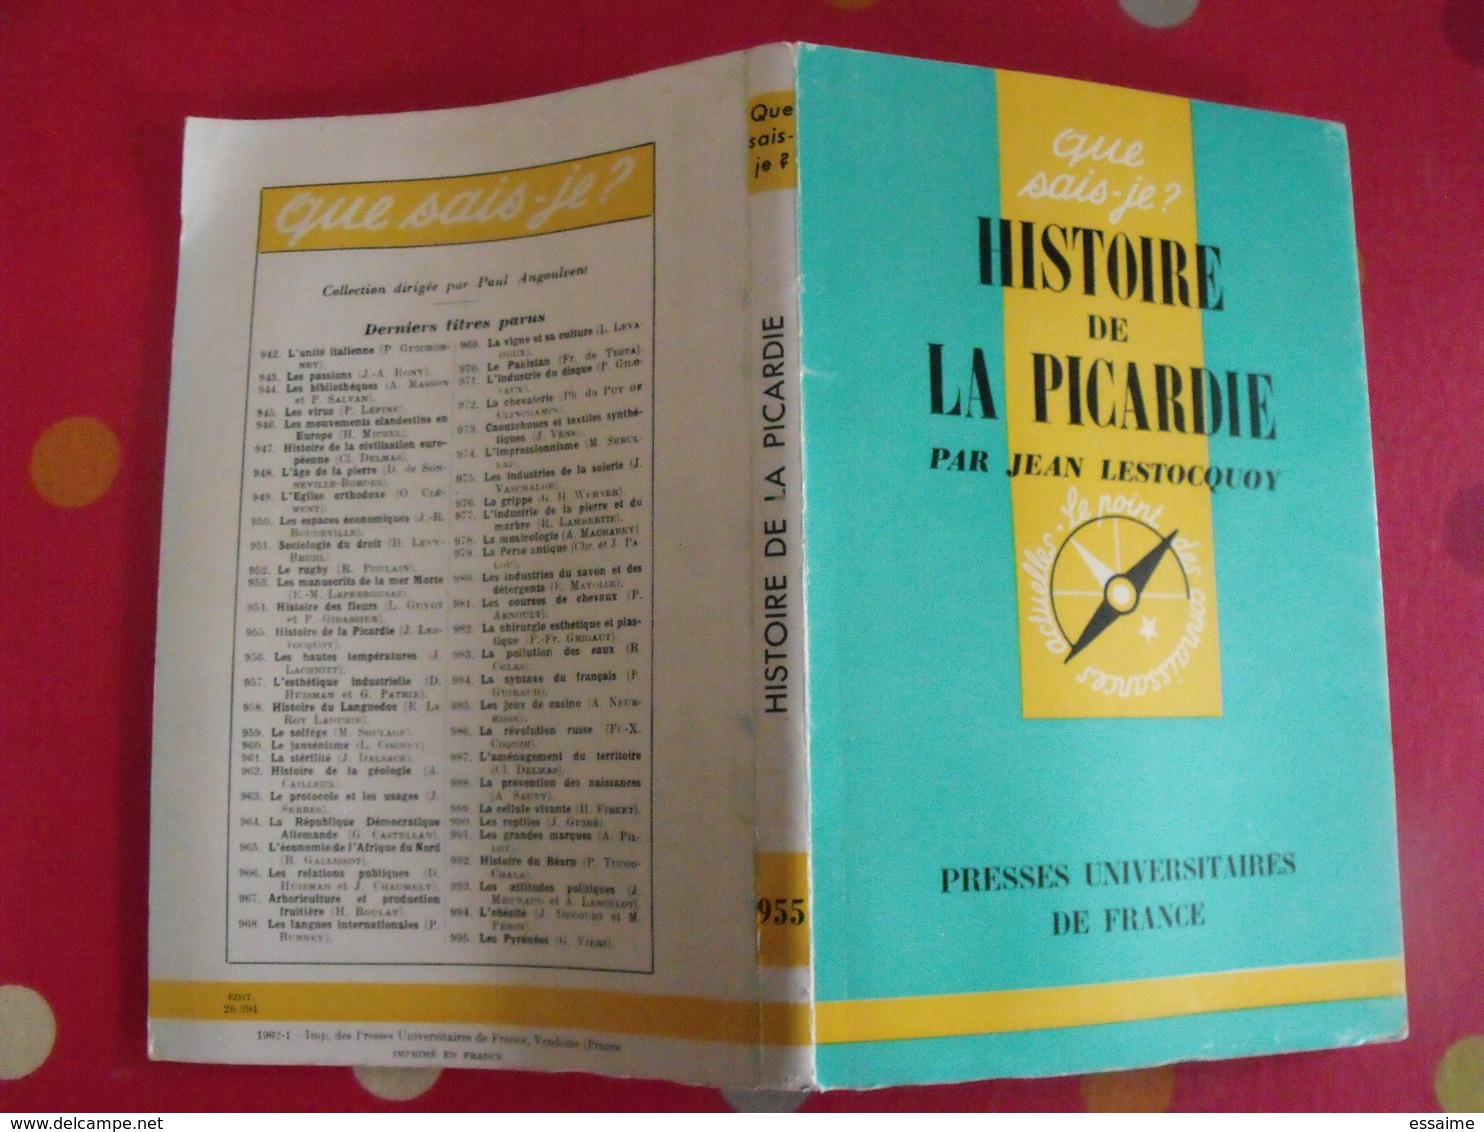 Histoire De La Picardie. Jean Lestocquoy. PUF, Que Sais-je ? N° 955. 1962 - Picardie - Nord-Pas-de-Calais